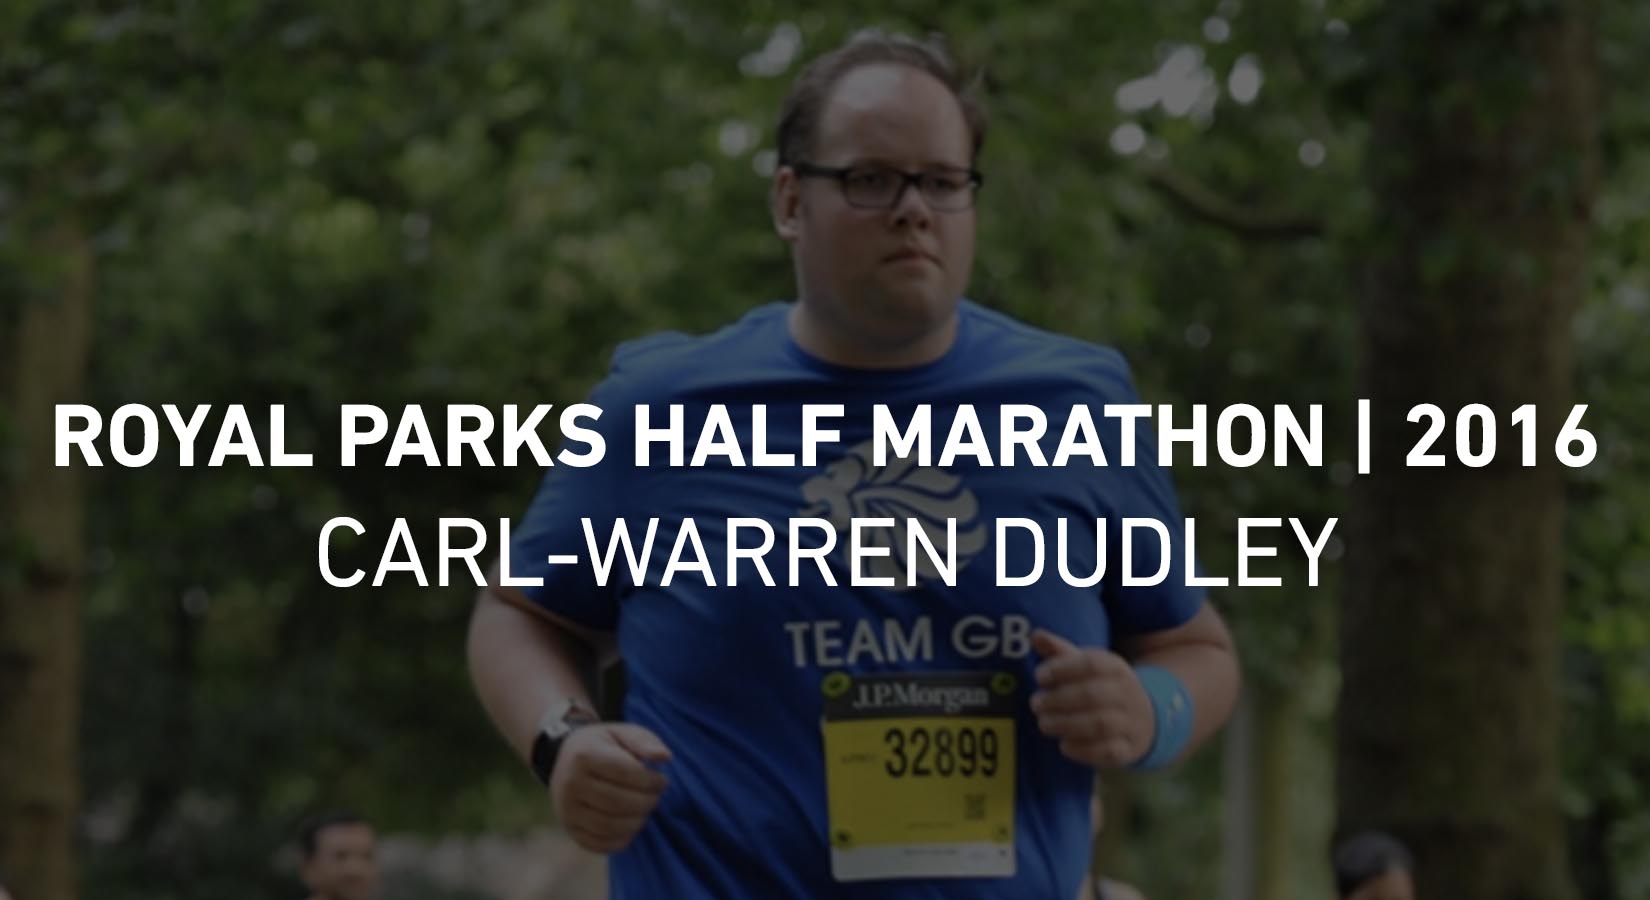 Royal Parks Half Marathon - Carl-Warren Dudley - 2016